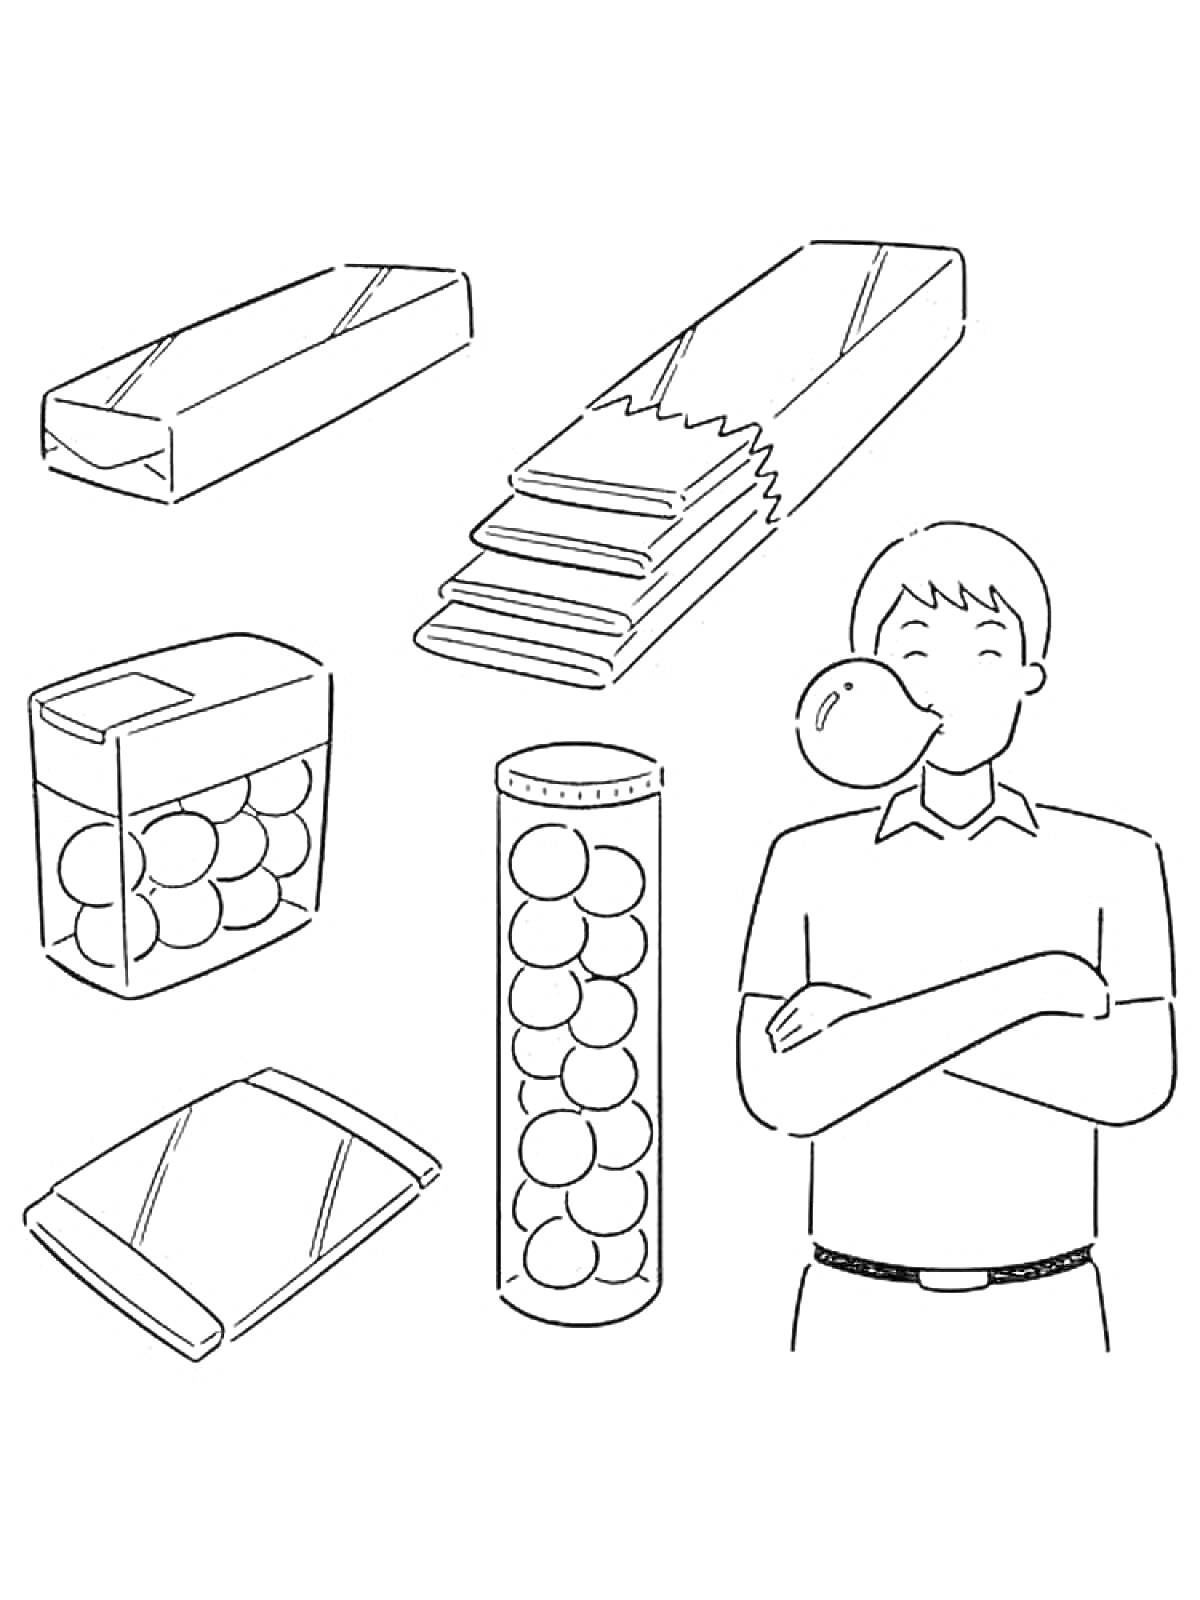 Человек с жвачкой, упаковки жвачки, банки с жевательными таблетками, жевательные шарики